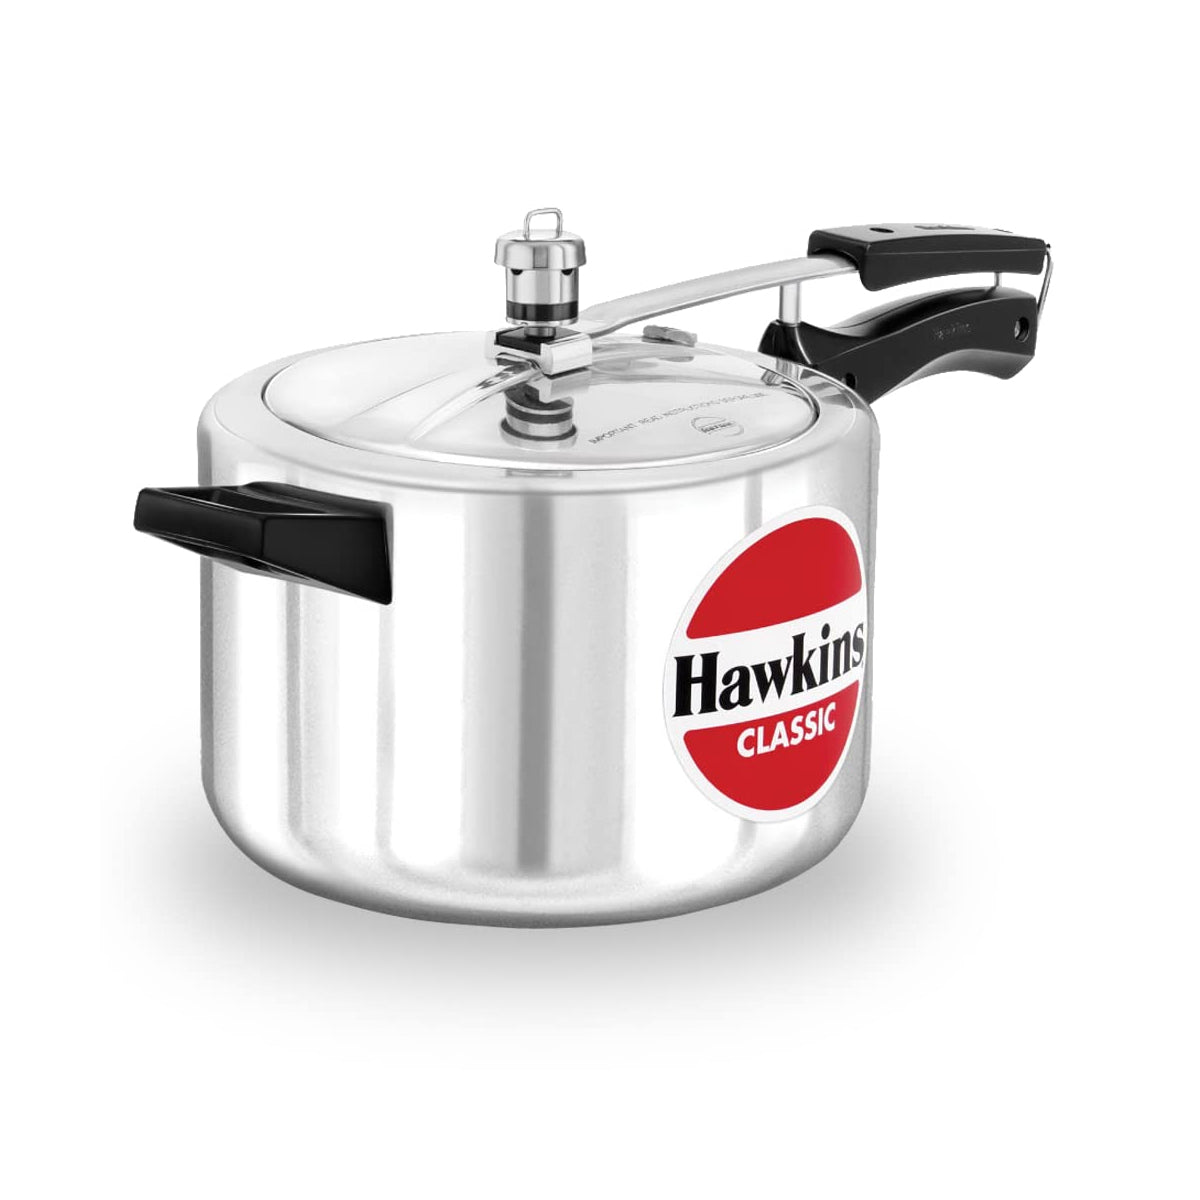 Hawkins Pressure Cooker - CLASSIC - Silver - 5 L